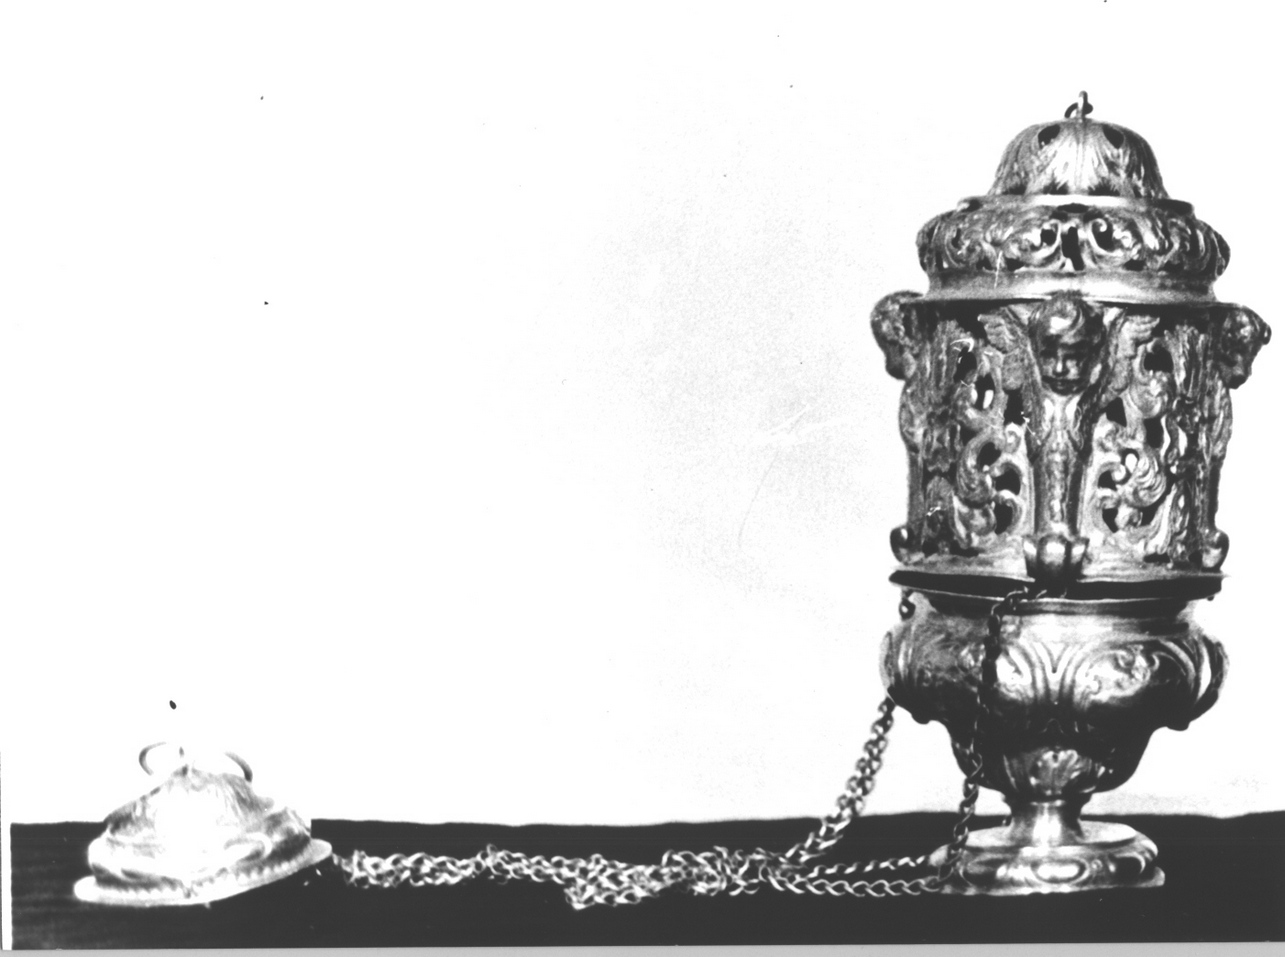 cherubini e motivi decorativi fitomorfi/ motivi decorativi a volute (turibolo, opera isolata) - bottega genovese (sec. XVIII)